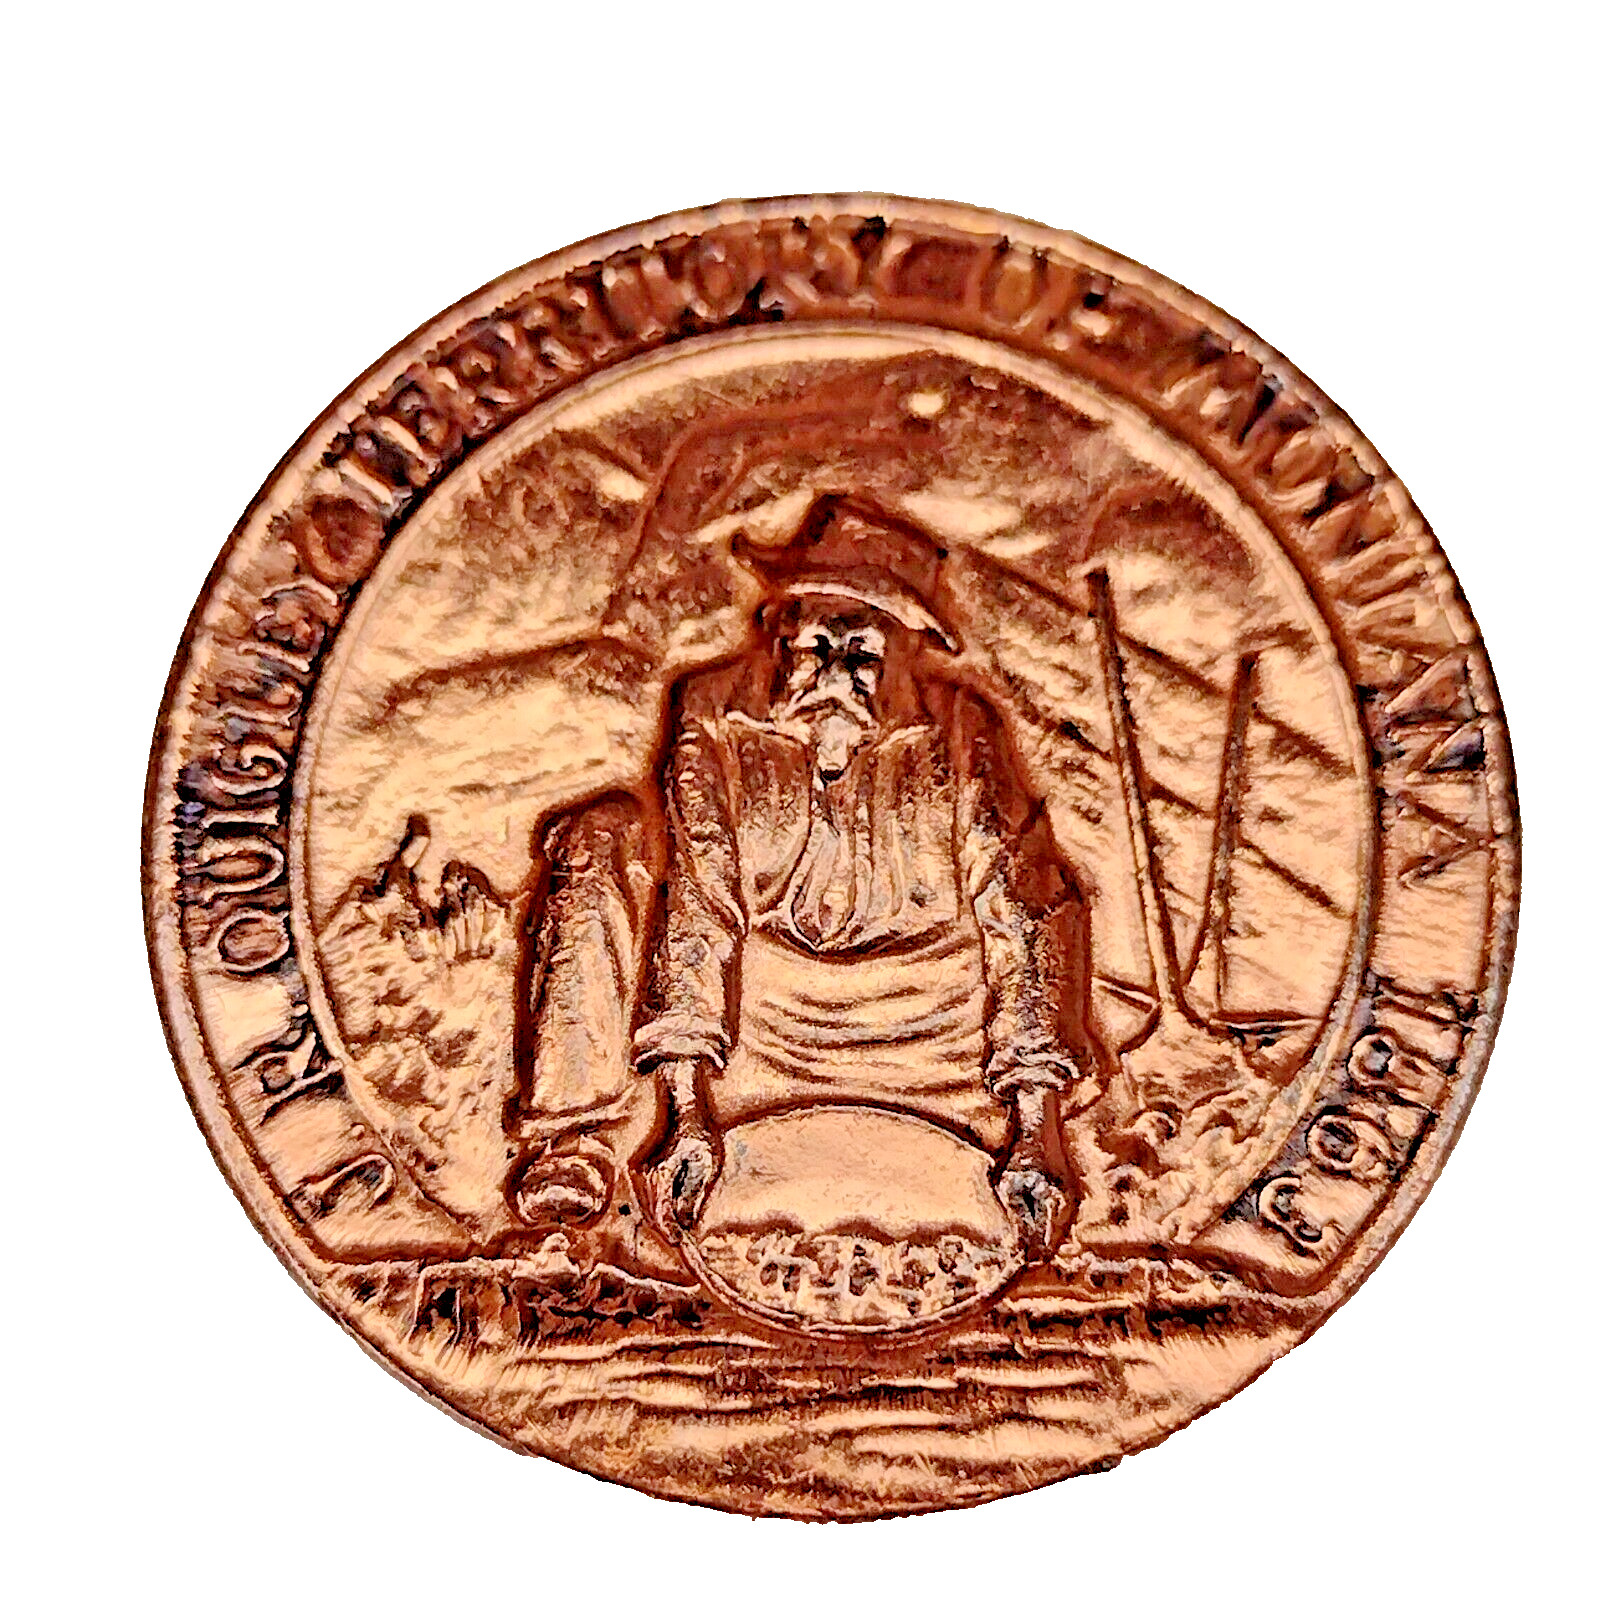 1968 Montana Territory Frontier Town Bronze 30mm Token- Medal in capsule-Vintage